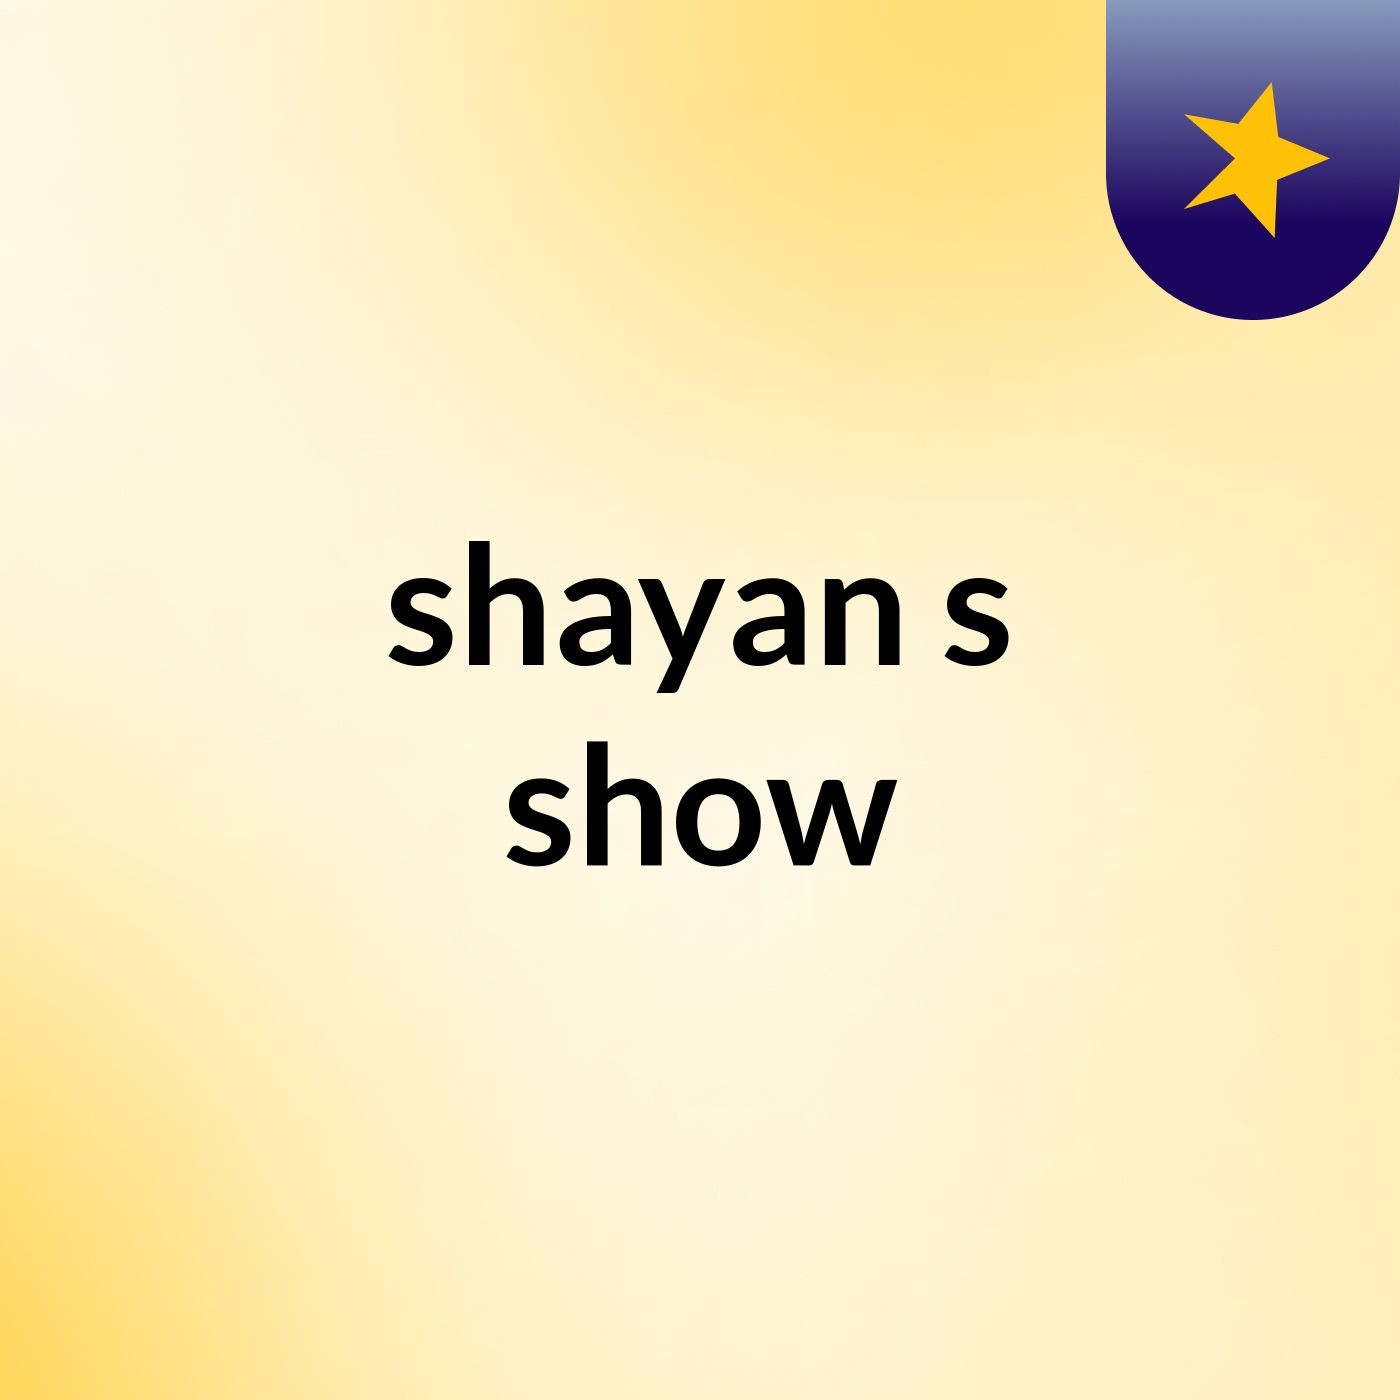 shayan's show